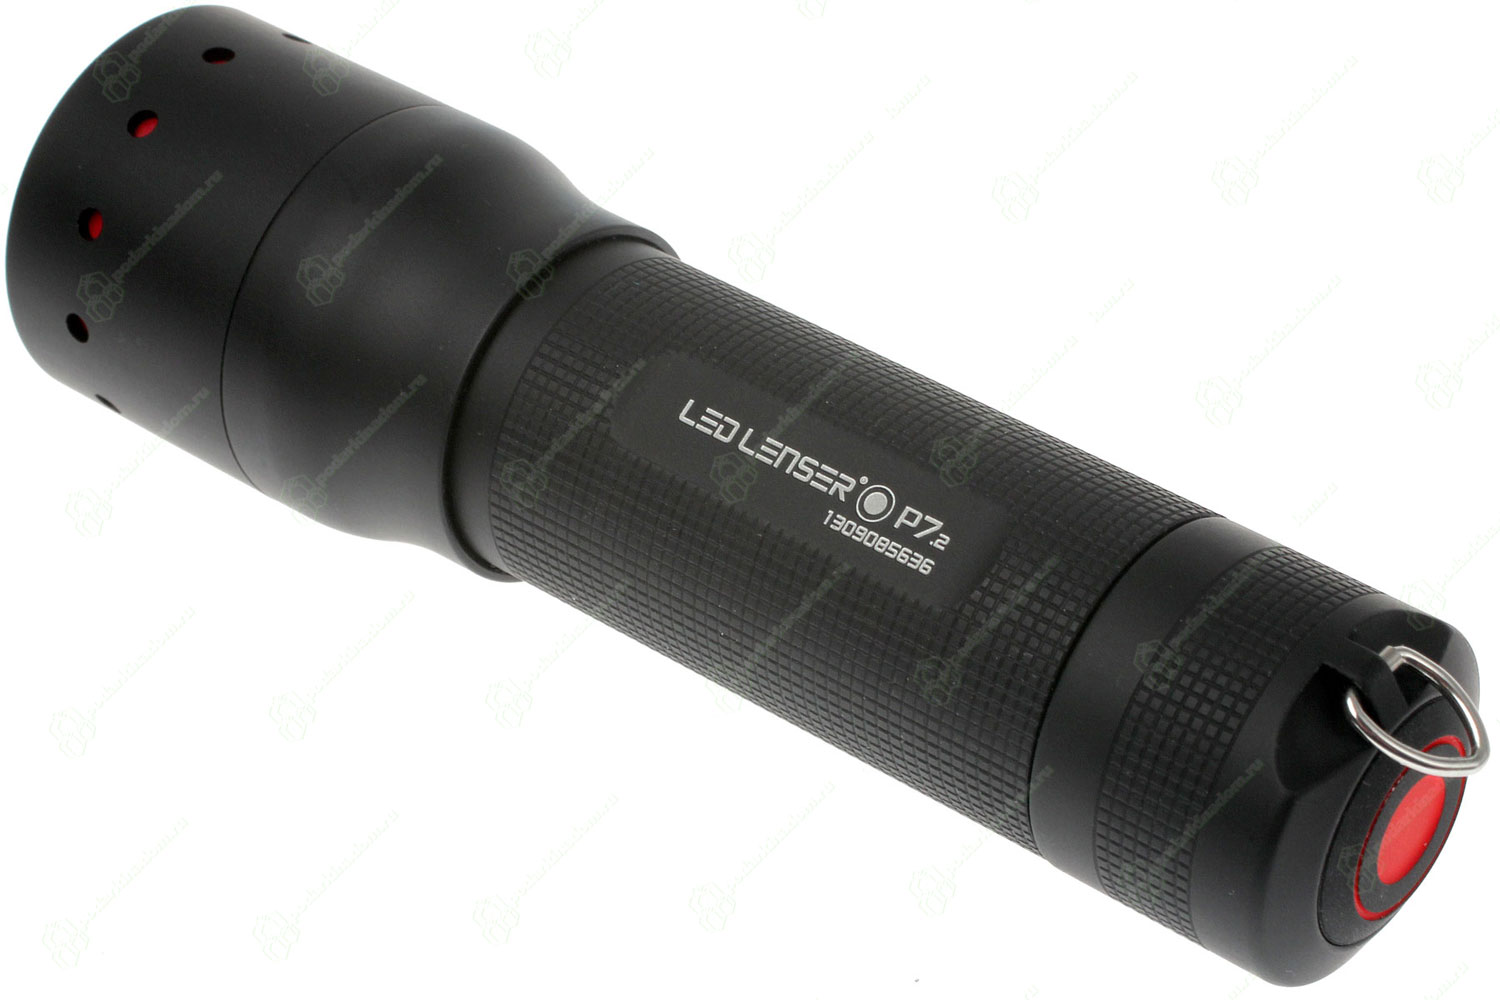 LED Lenser P7.2